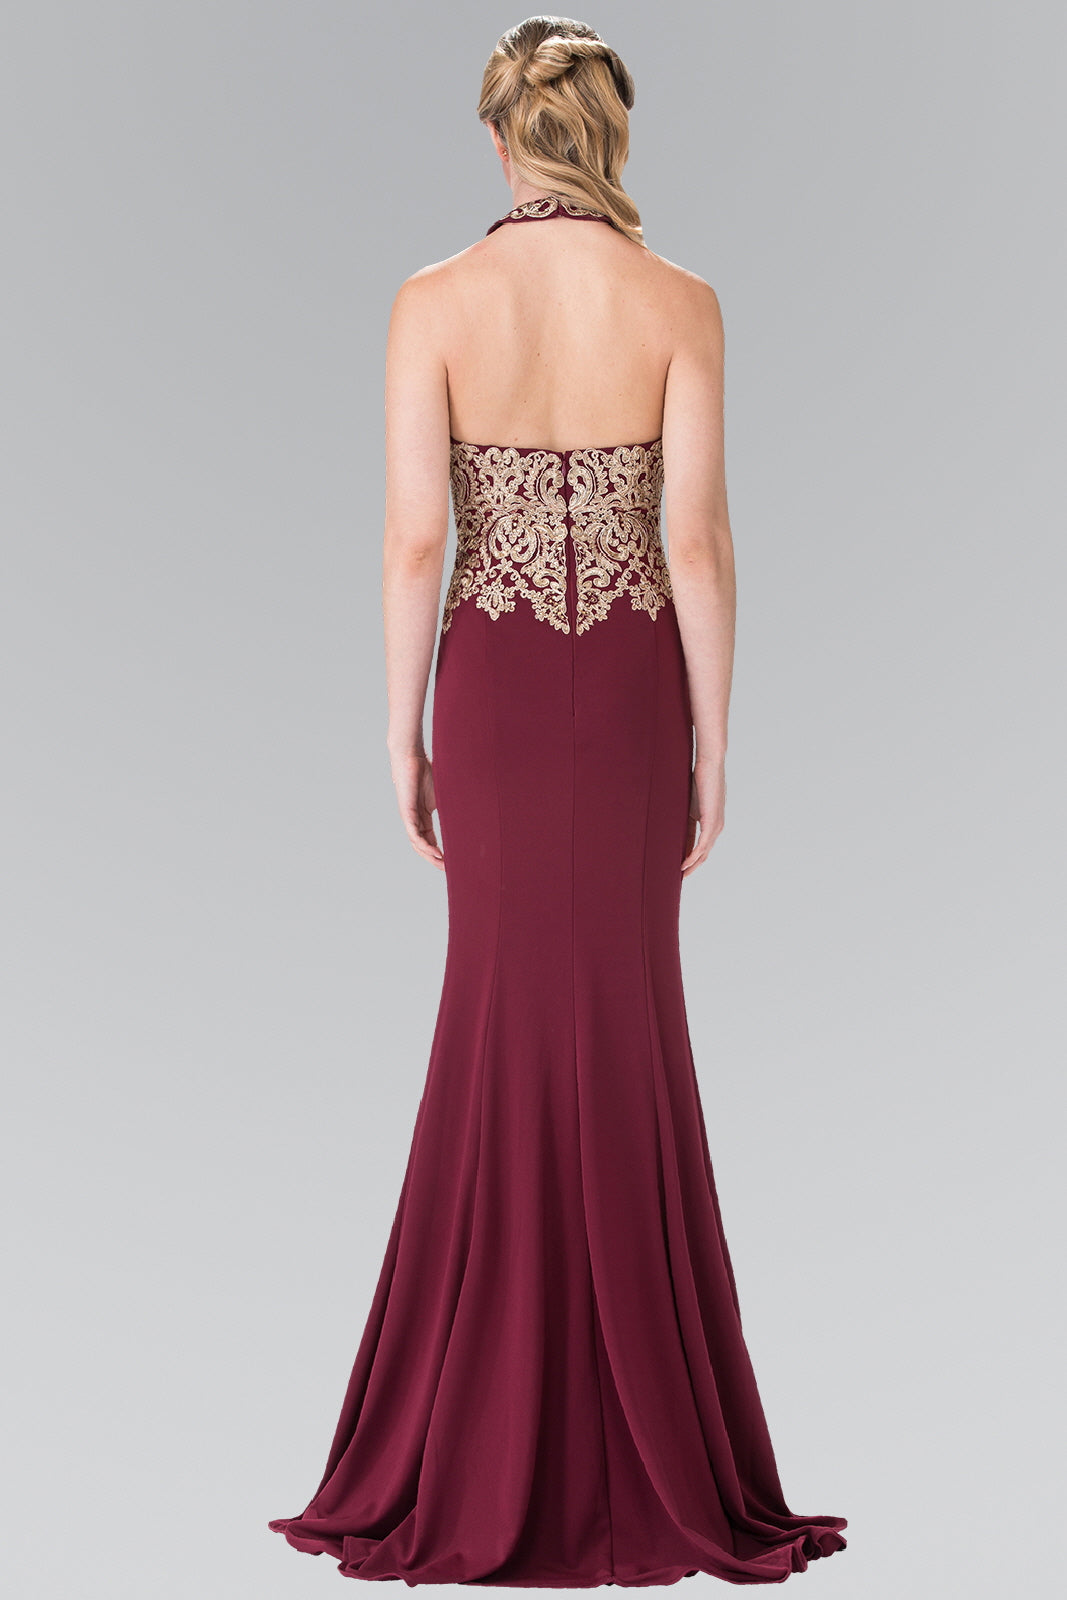 Prom Fitted Halter Neck Formal Dress Evening Gown - The Dress Outlet Elizabeth K BURGUNDY